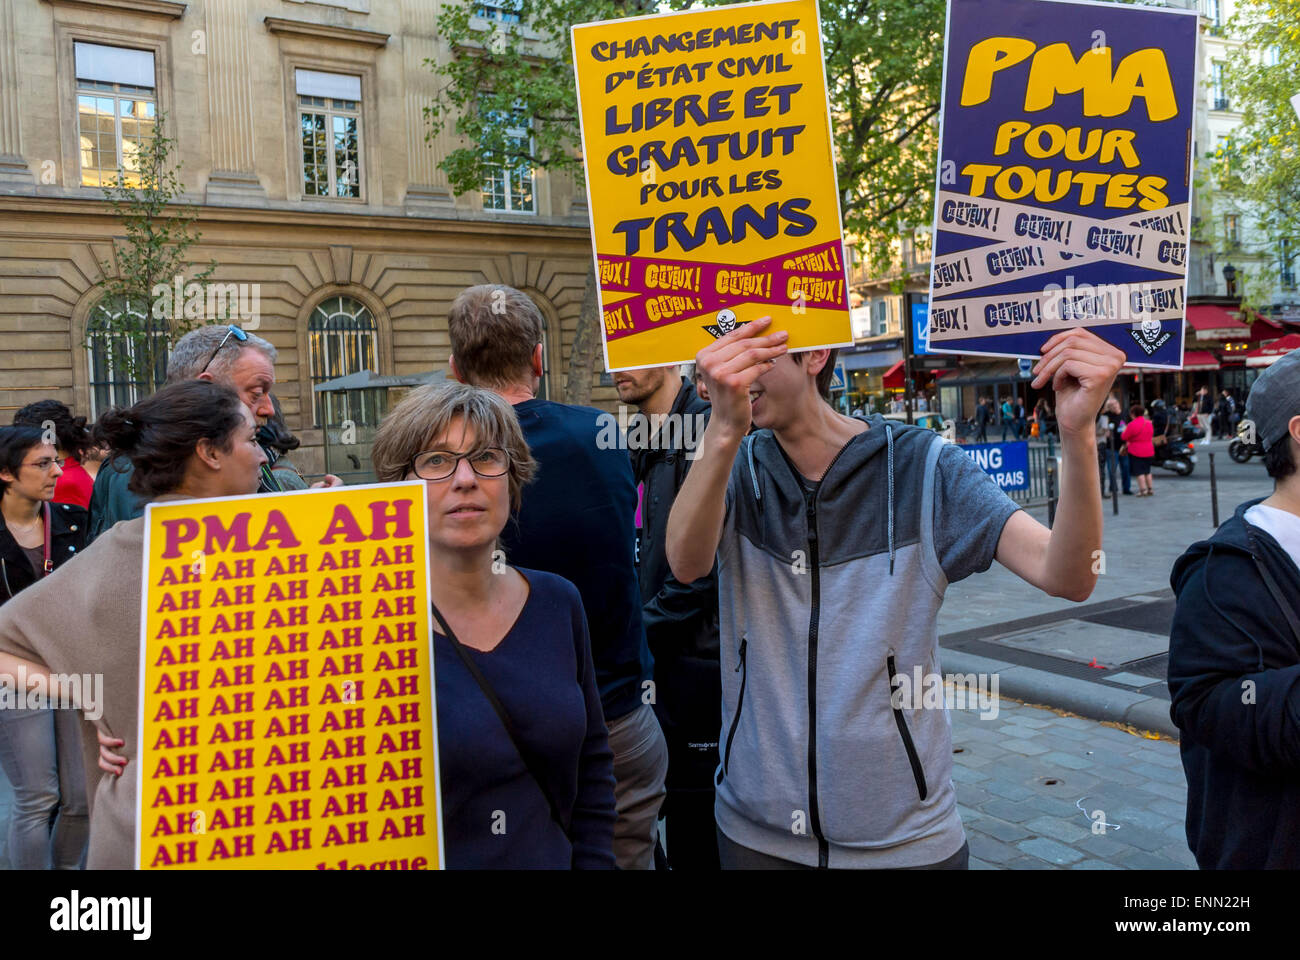 Parigi, Francia., dimostrazione di strada, 2° anniversario della legge di matrimonio gay, protesta di LGBT N.G.O. per l'accesso al M.A.P. Diritti di riproduzione, (PMA) manifesto francese di protesta sociale contro la discriminazione Foto Stock